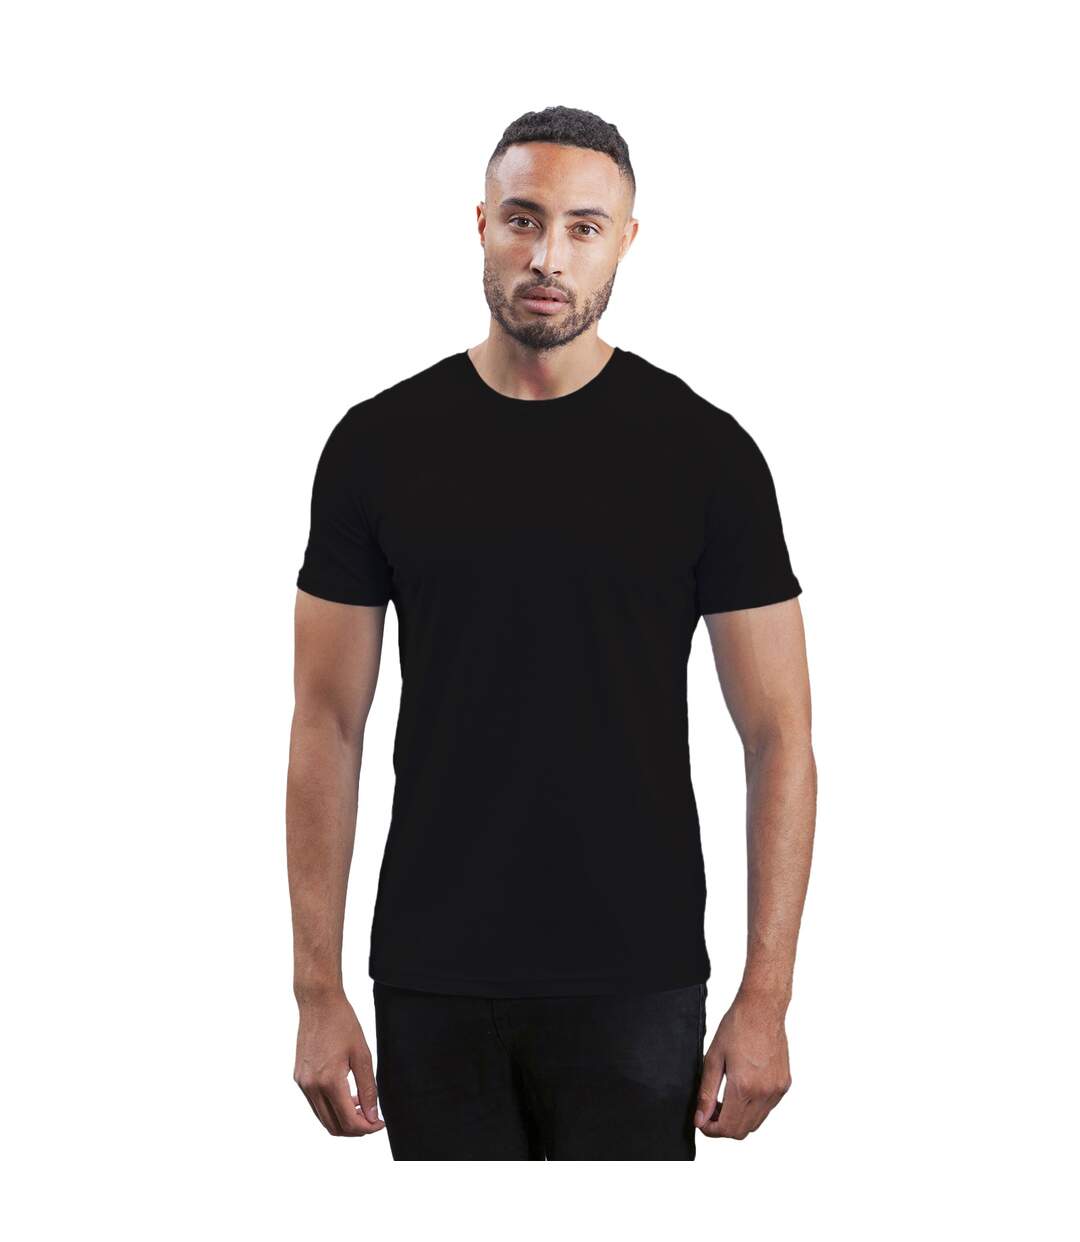 Mantis T-shirt à manches courtes pour hommes (Noir) - UTBC4764